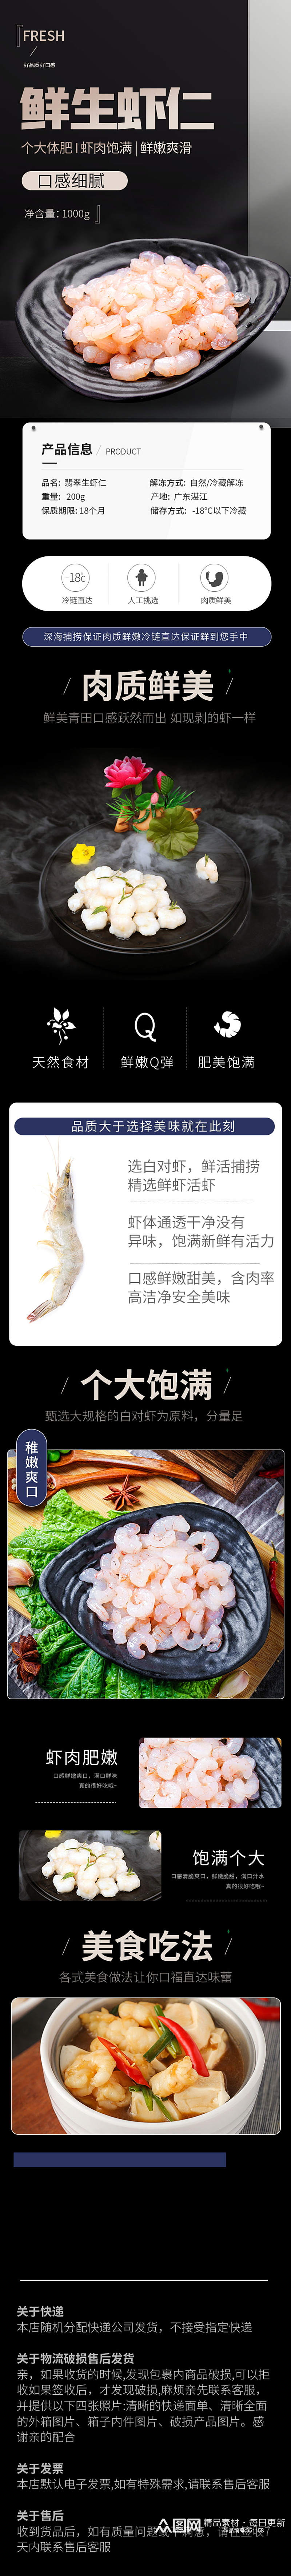 海捕虾仁干货海鲜进口食品详情页素材